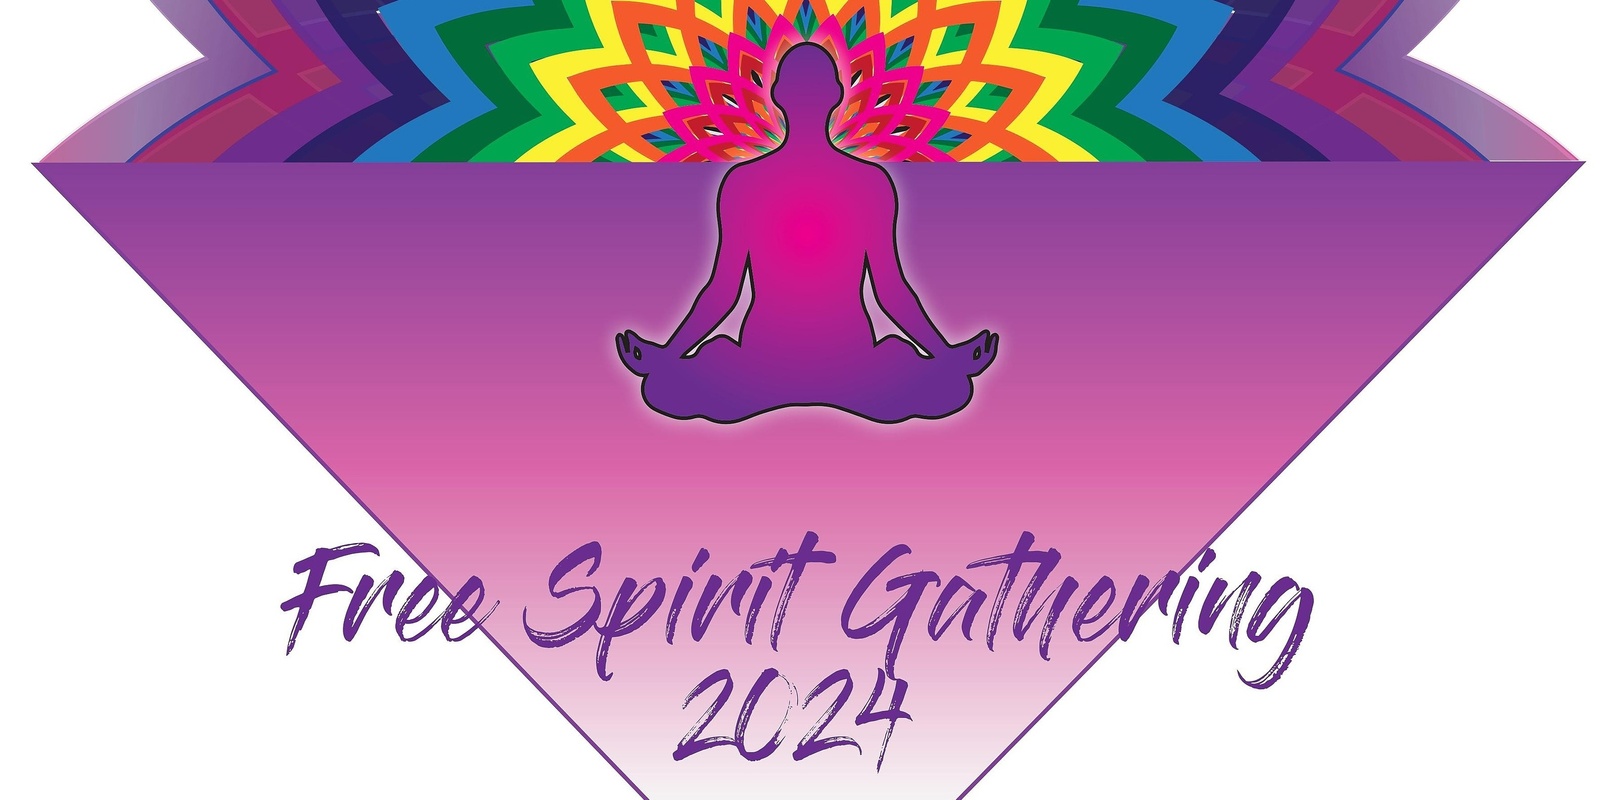 Free Spirit Gathering 2024